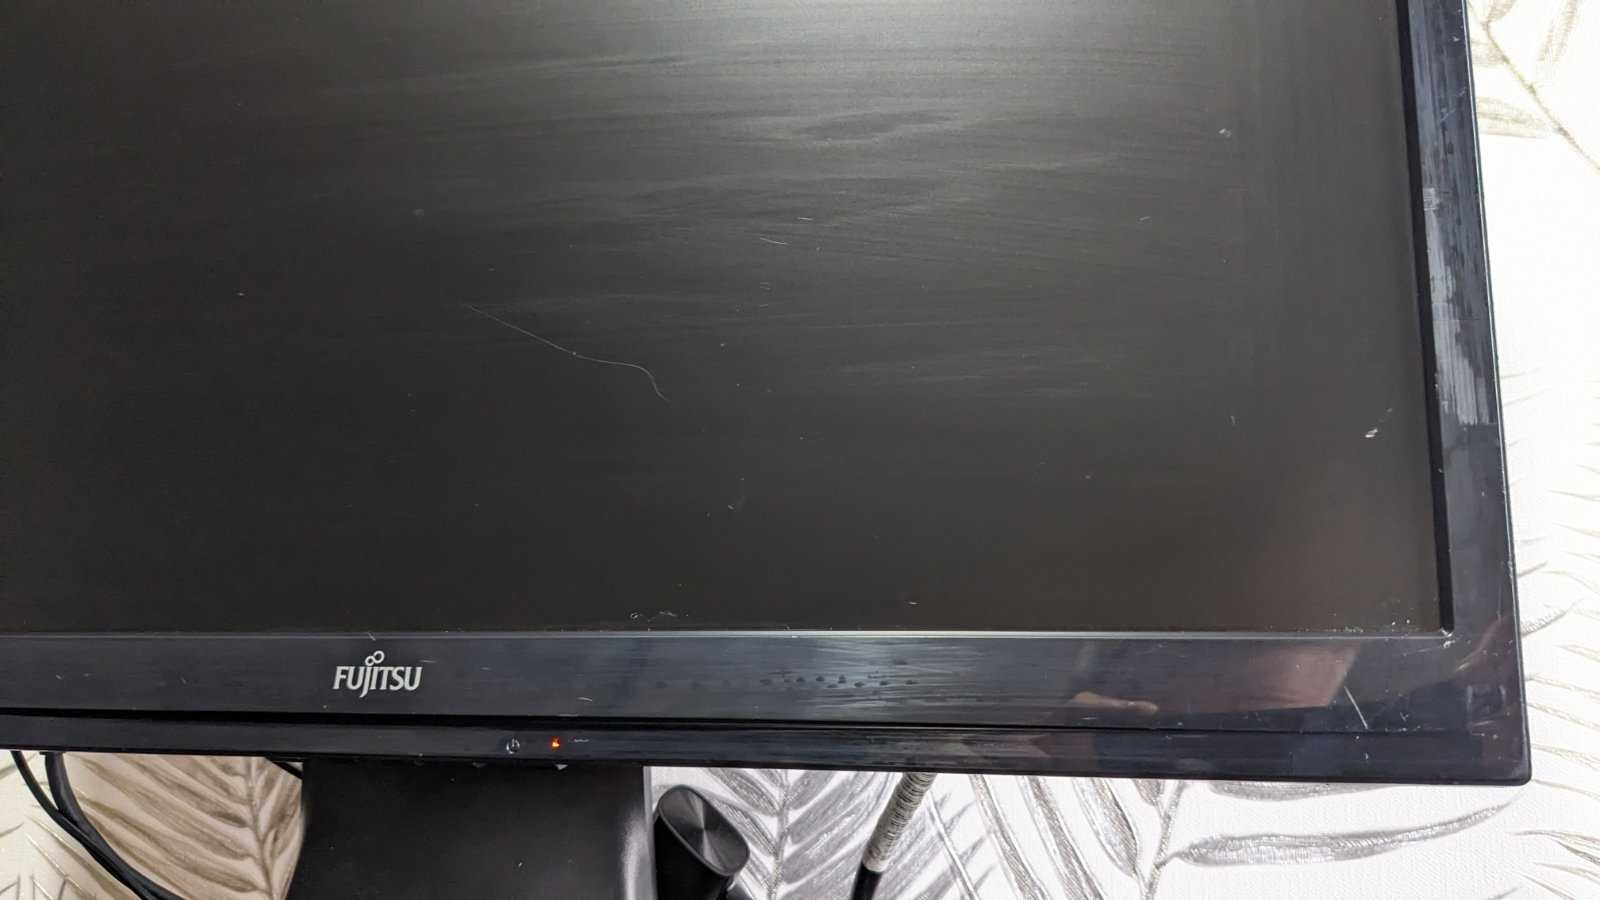 Монітор Fujitsu LL3200T 20", 1600x900 зі звуком